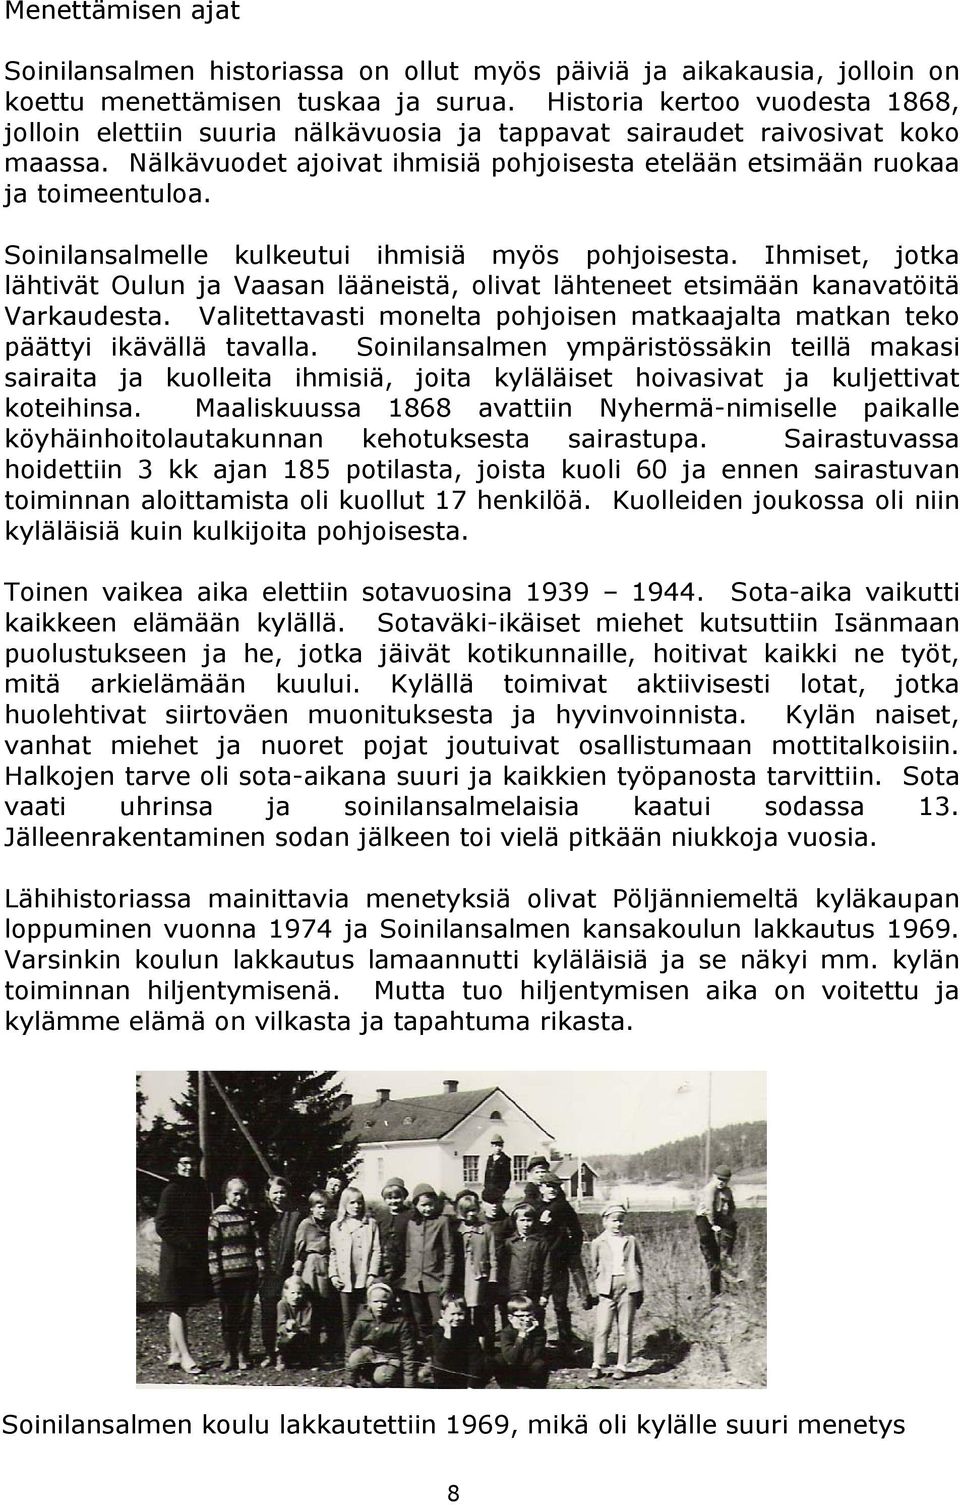 Soinilansalmelle kulkeutui ihmisiä myös pohjoisesta. Ihmiset, jotka lähtivät Oulun ja Vaasan lääneistä, olivat lähteneet etsimään kanavatöitä Varkaudesta.